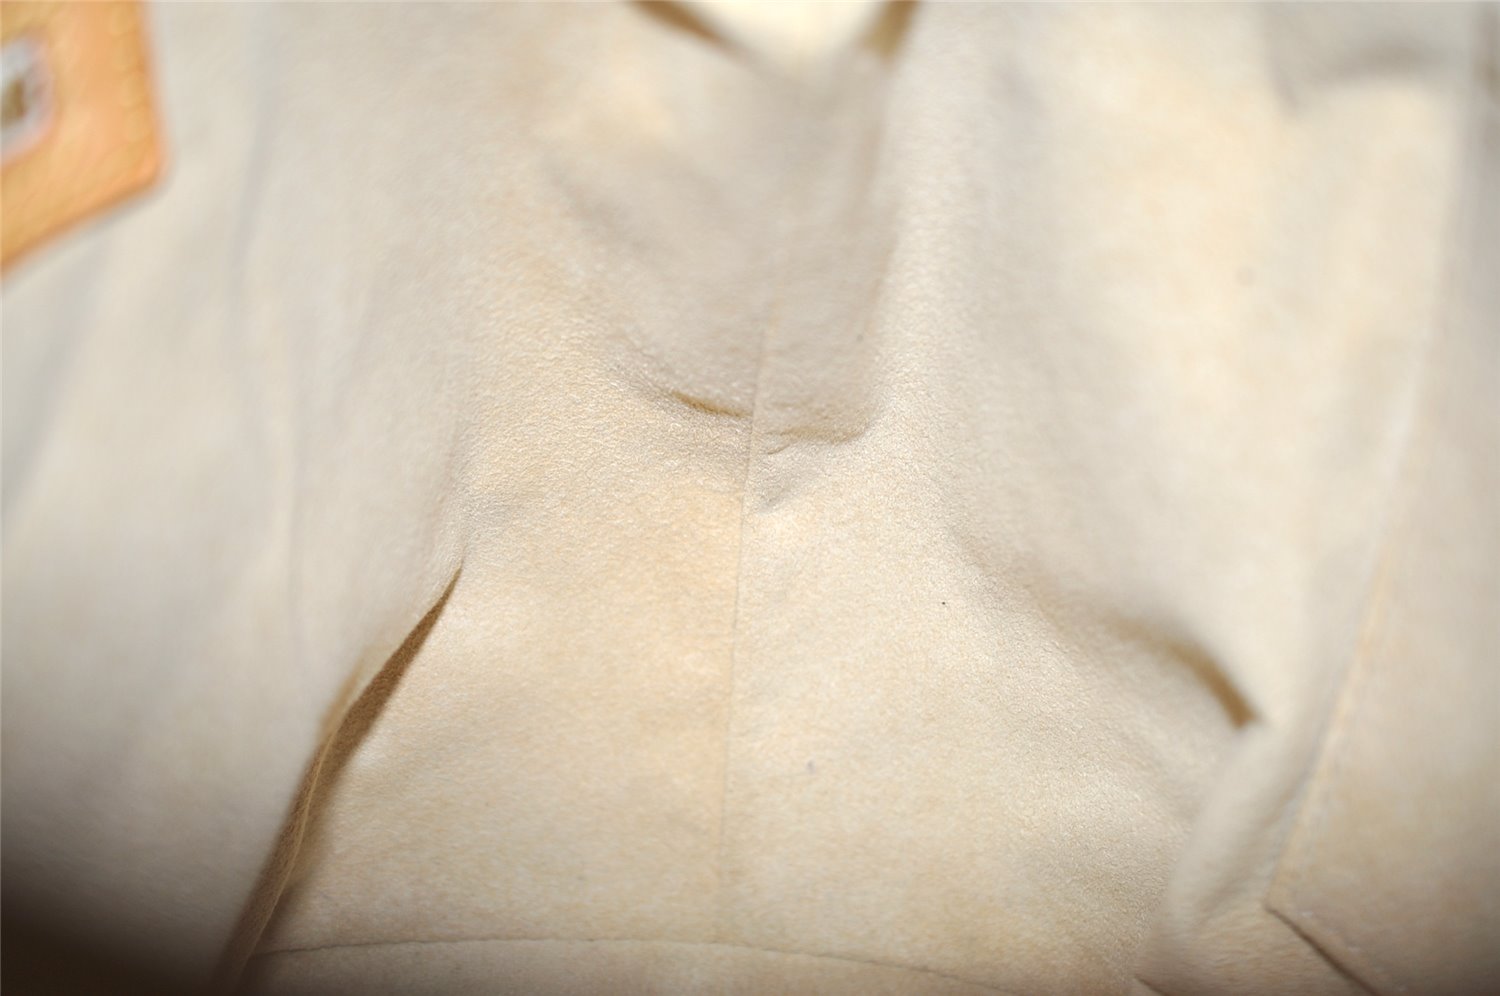 Authentic Louis Vuitton Damier Azur Hampstead PM N51207 Shoulder Tote Bag 0152K